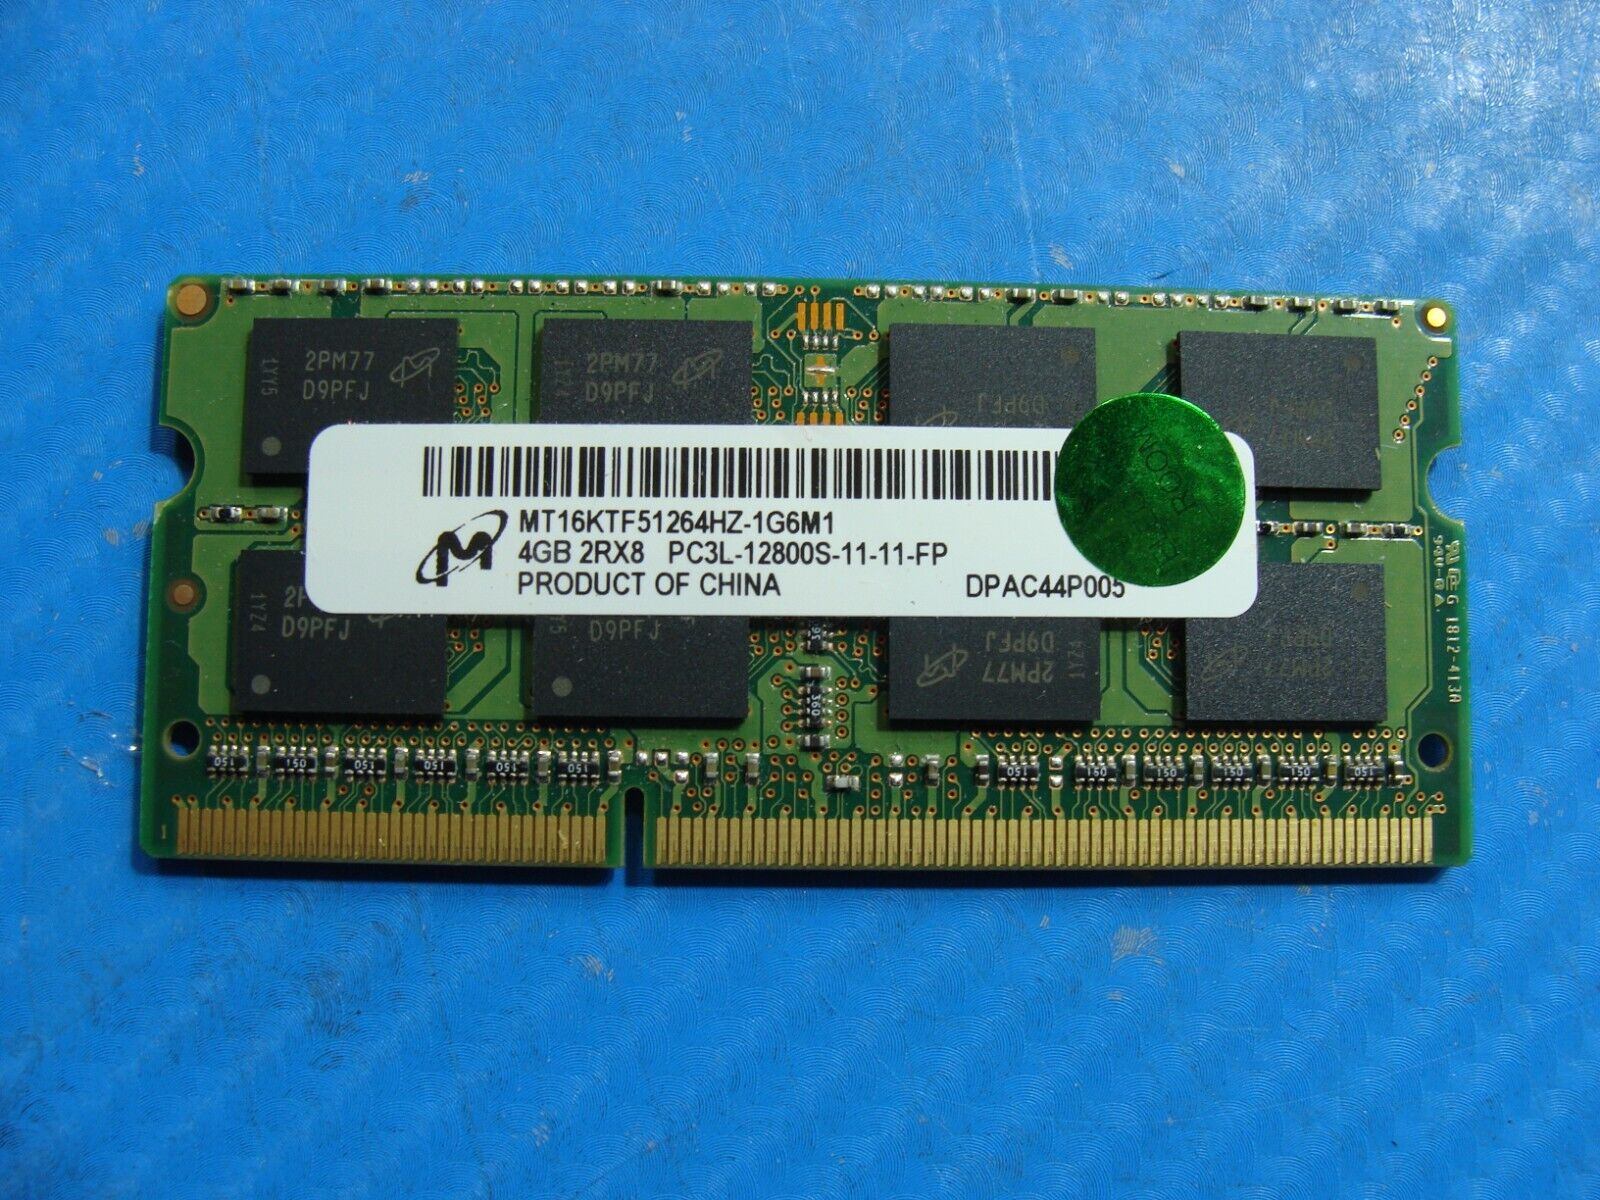 HP 745 G5 Micron 4GB 2Rx8 PC3L-12800S Memory RAM SO-DIMM MT16KTF51264HZ-1G6M1